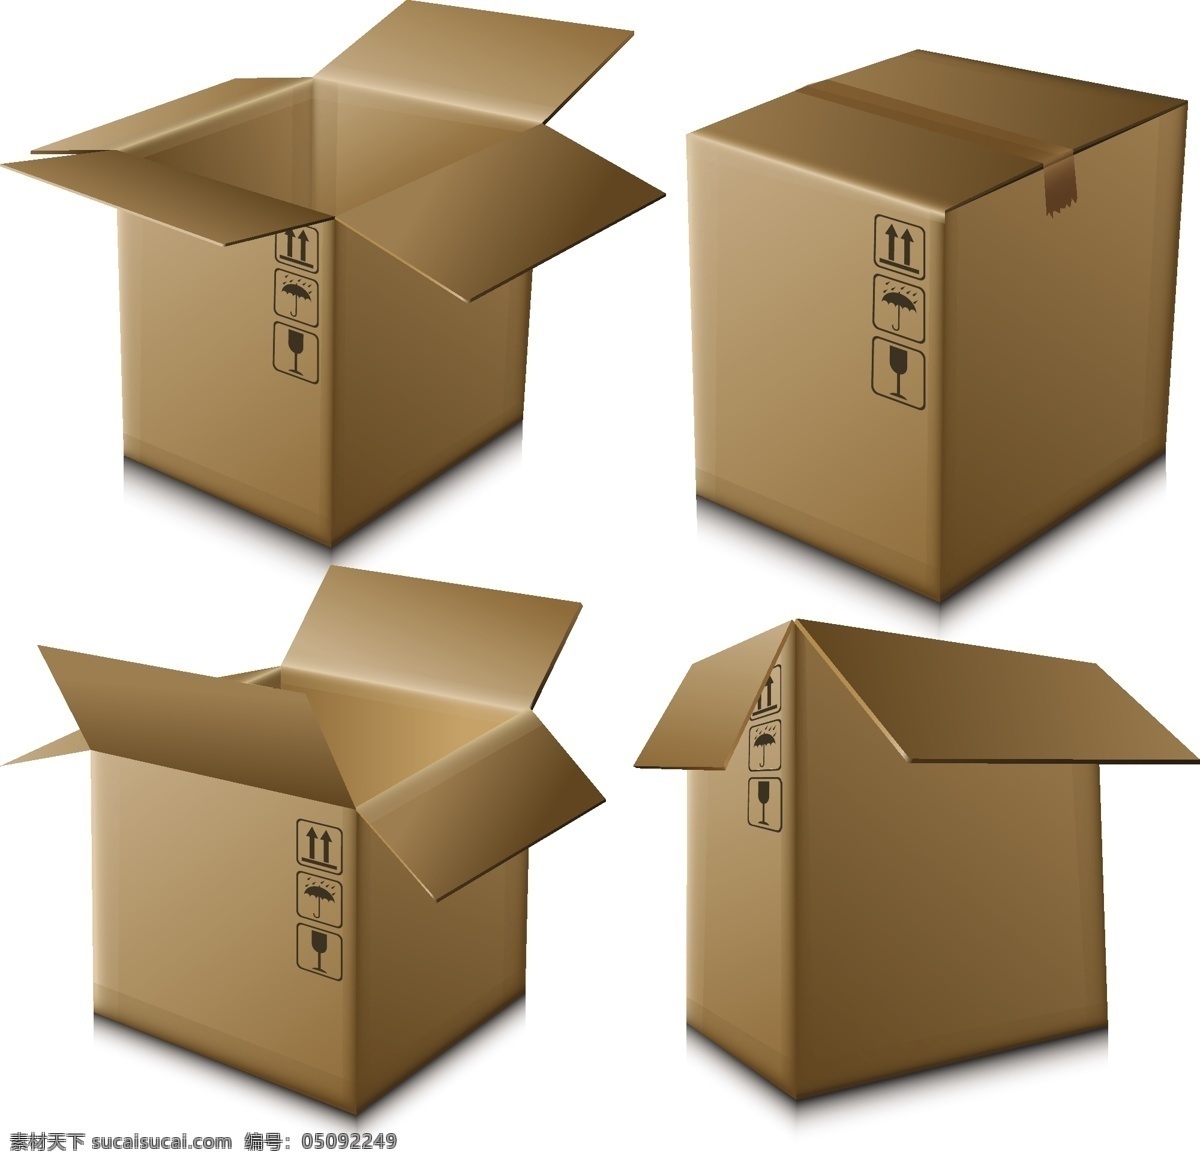 纸箱设计素材 箱子 箱子设计 纸箱 包装箱 包装盒 矢量盒子 矢量素材 纸盒 产品包装 包装设计 白色